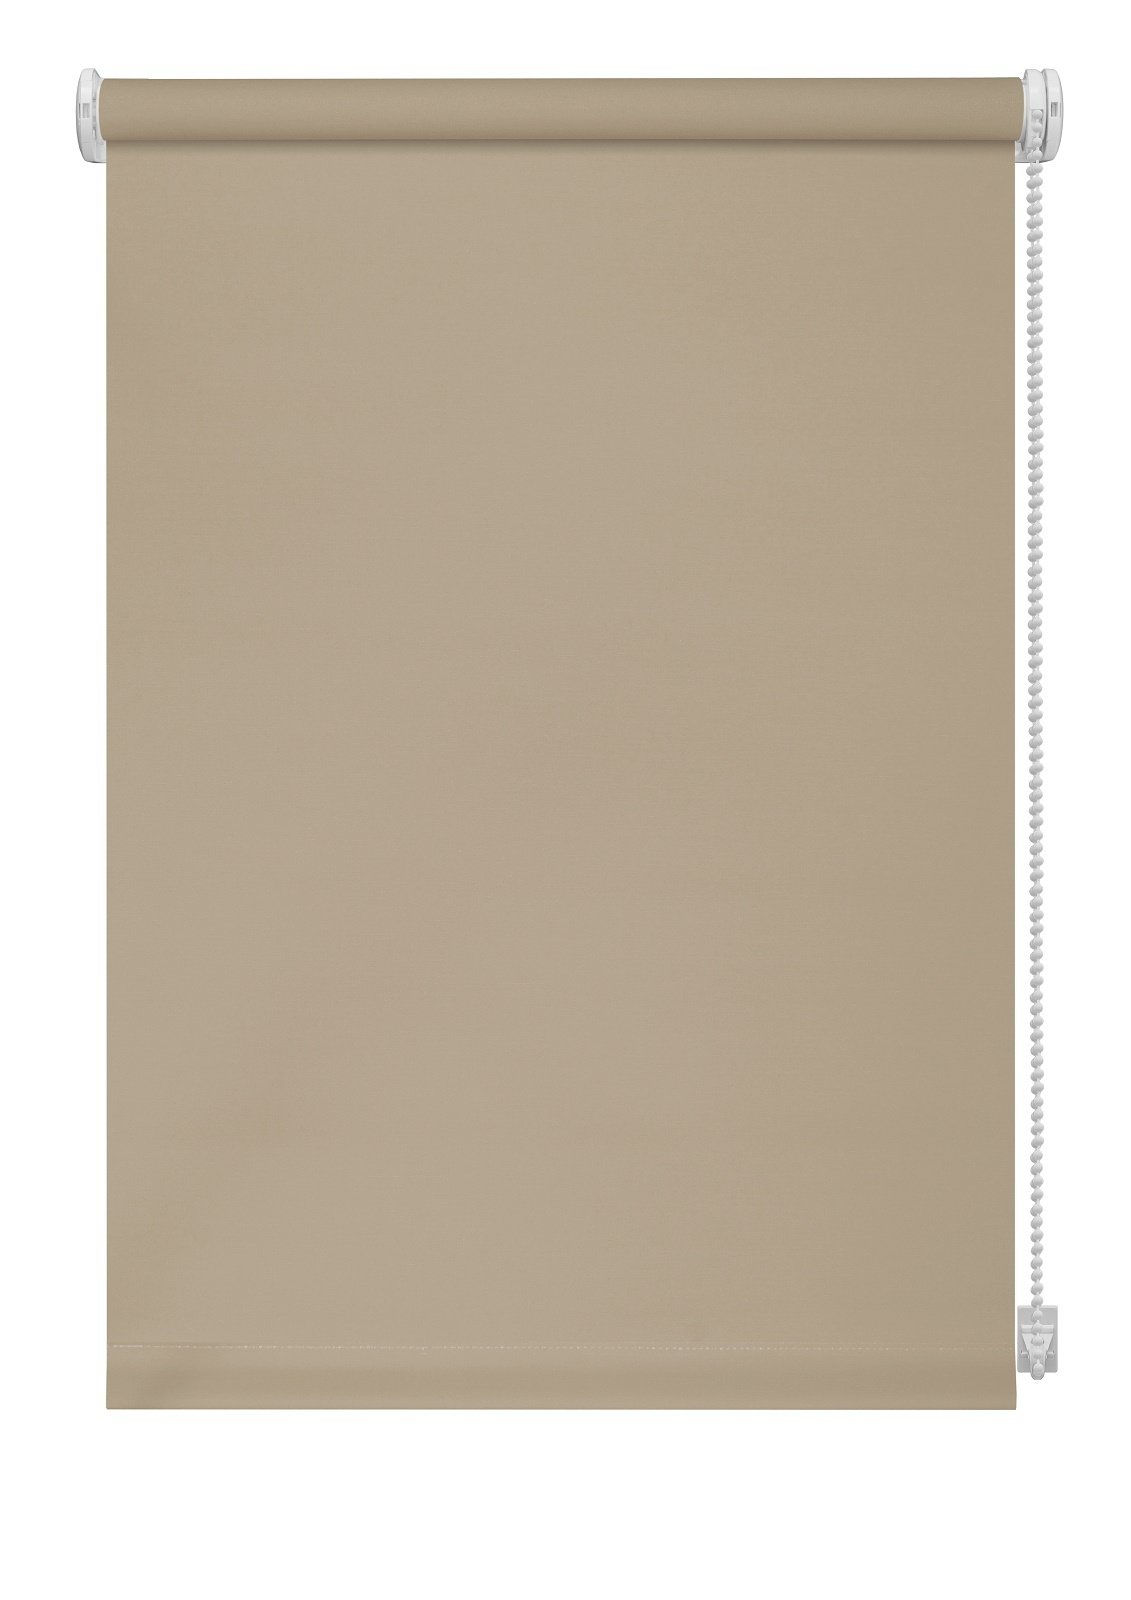 Klasikinė ritininė užuolaida LIGHT 301, smėlio sp., 210 x 170 cm - 2